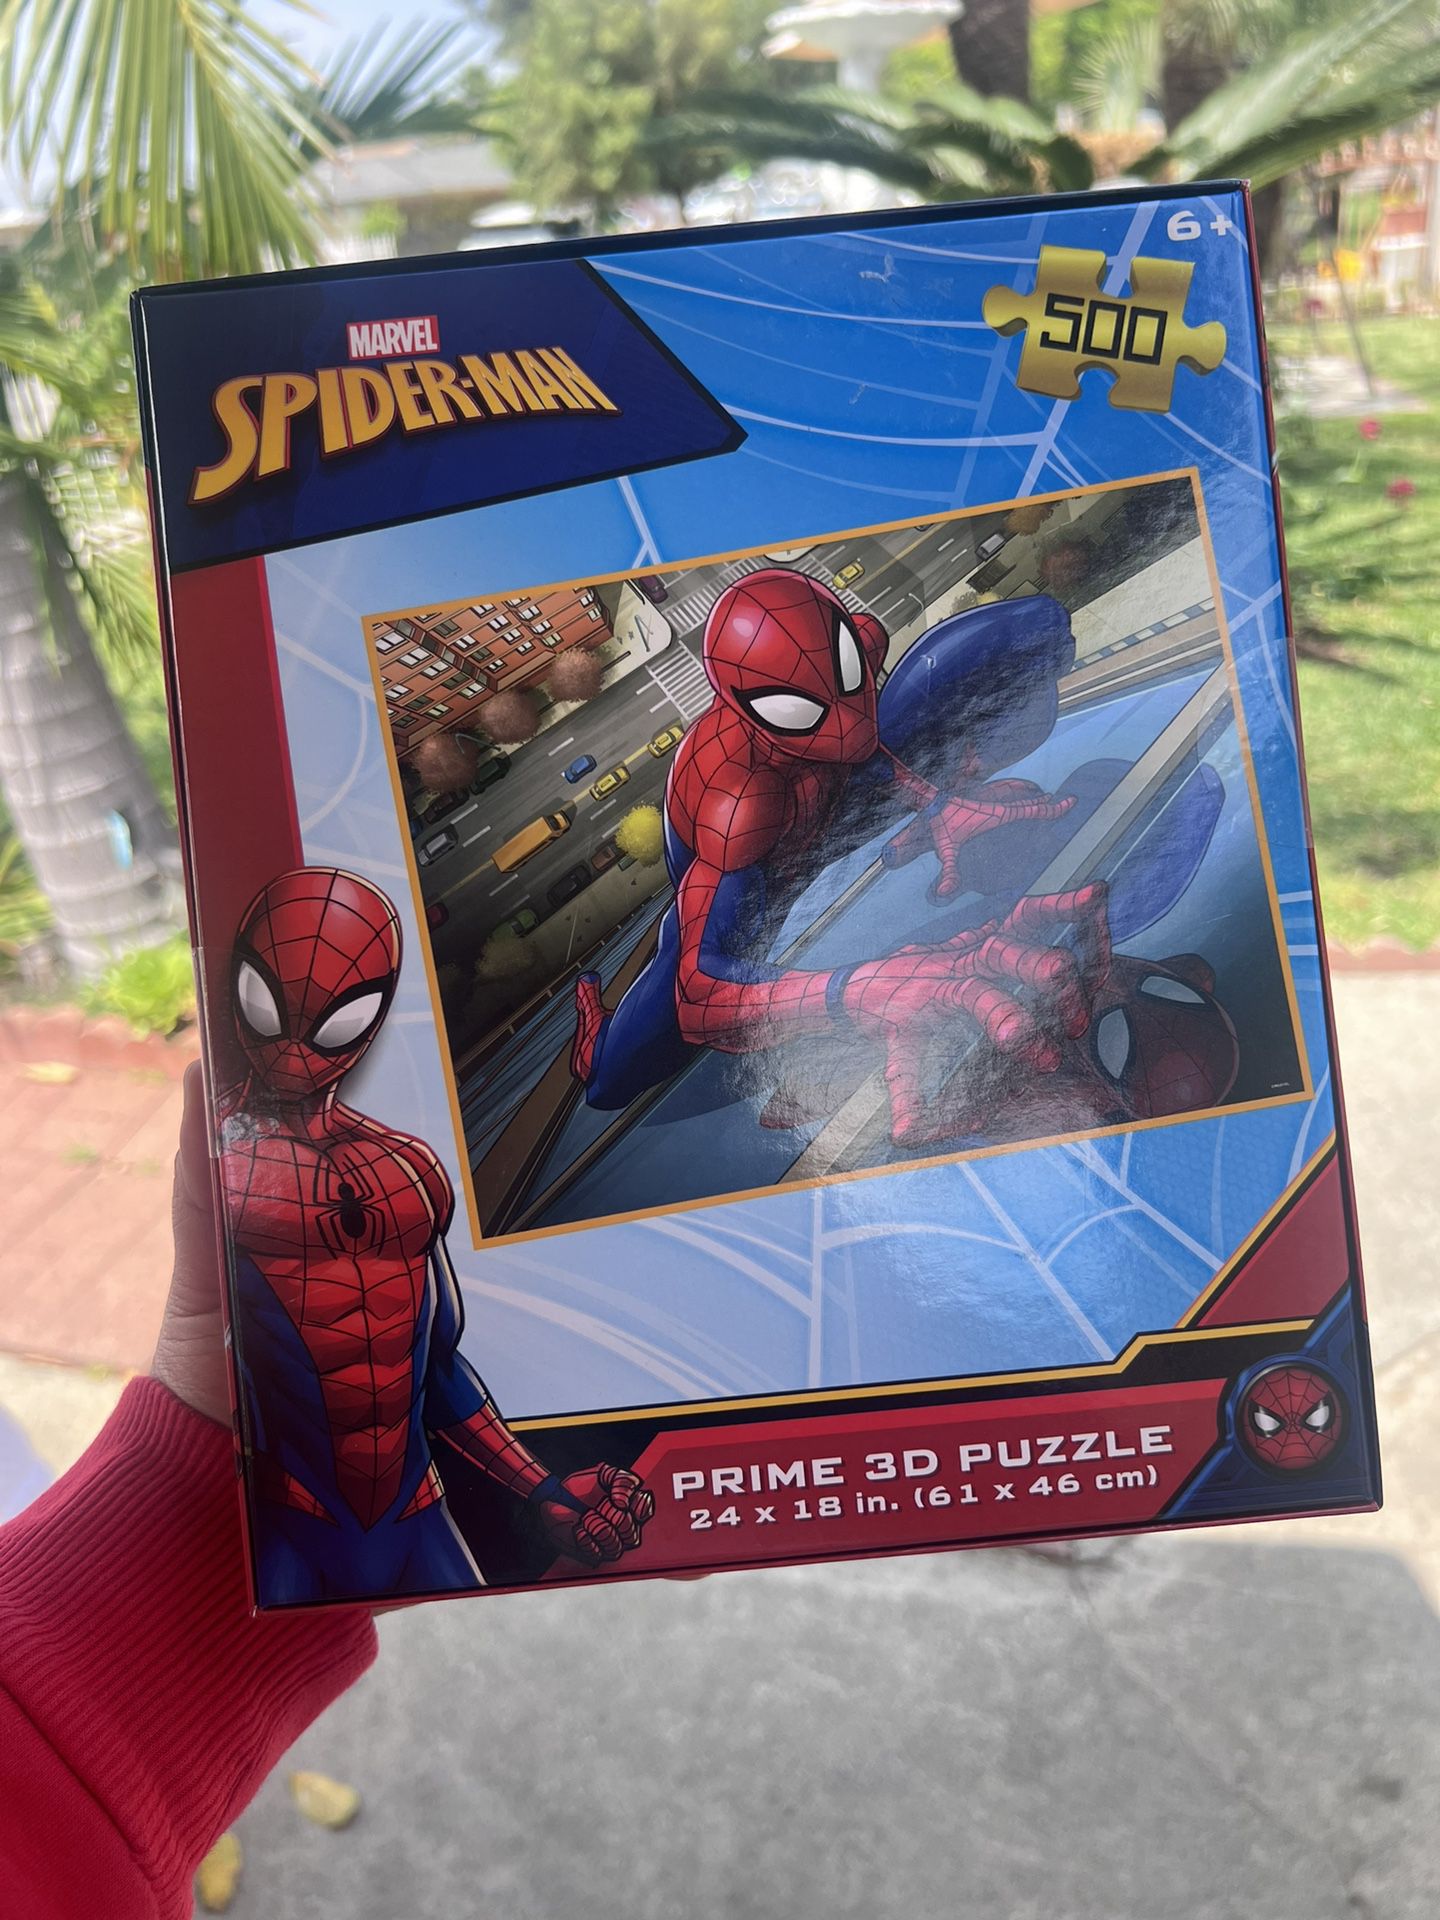 Spiderman Puzzle